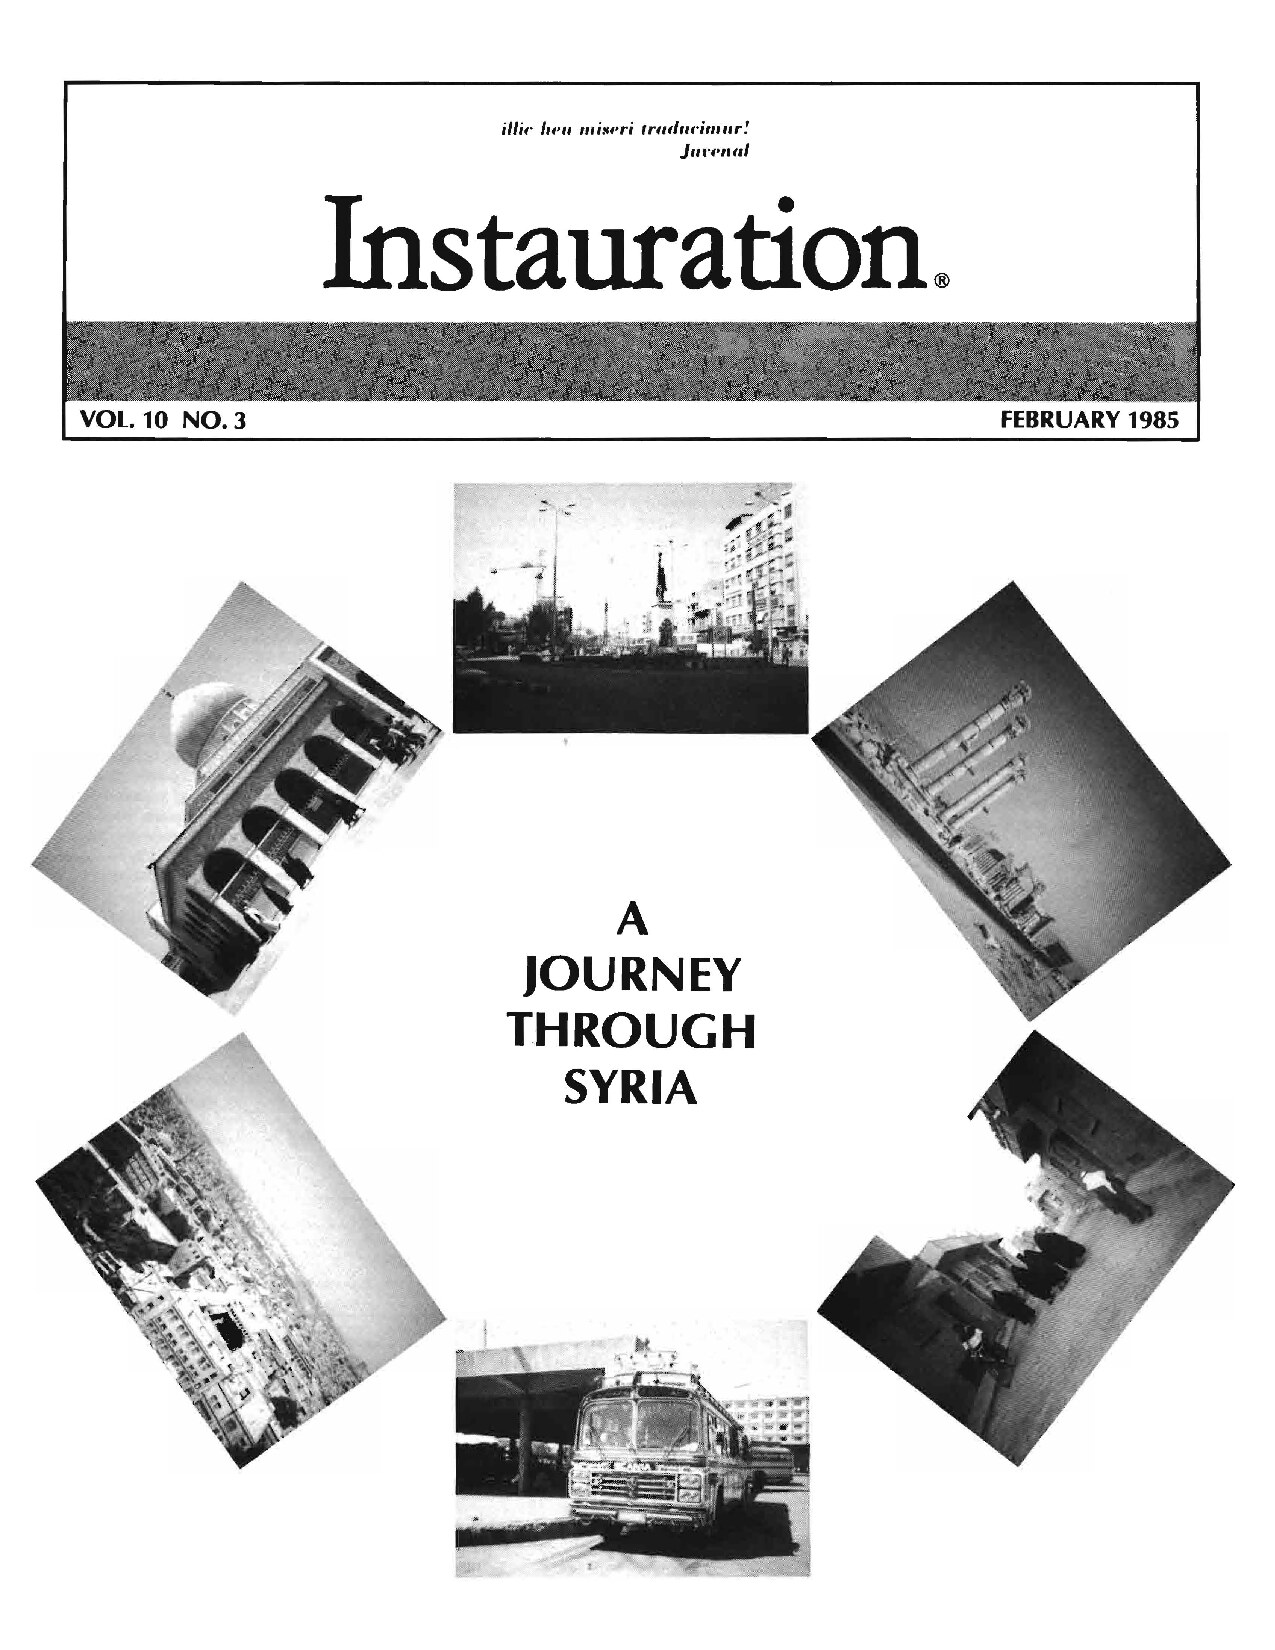 Instauration-1985-02-February-Vol10-No3-pt1